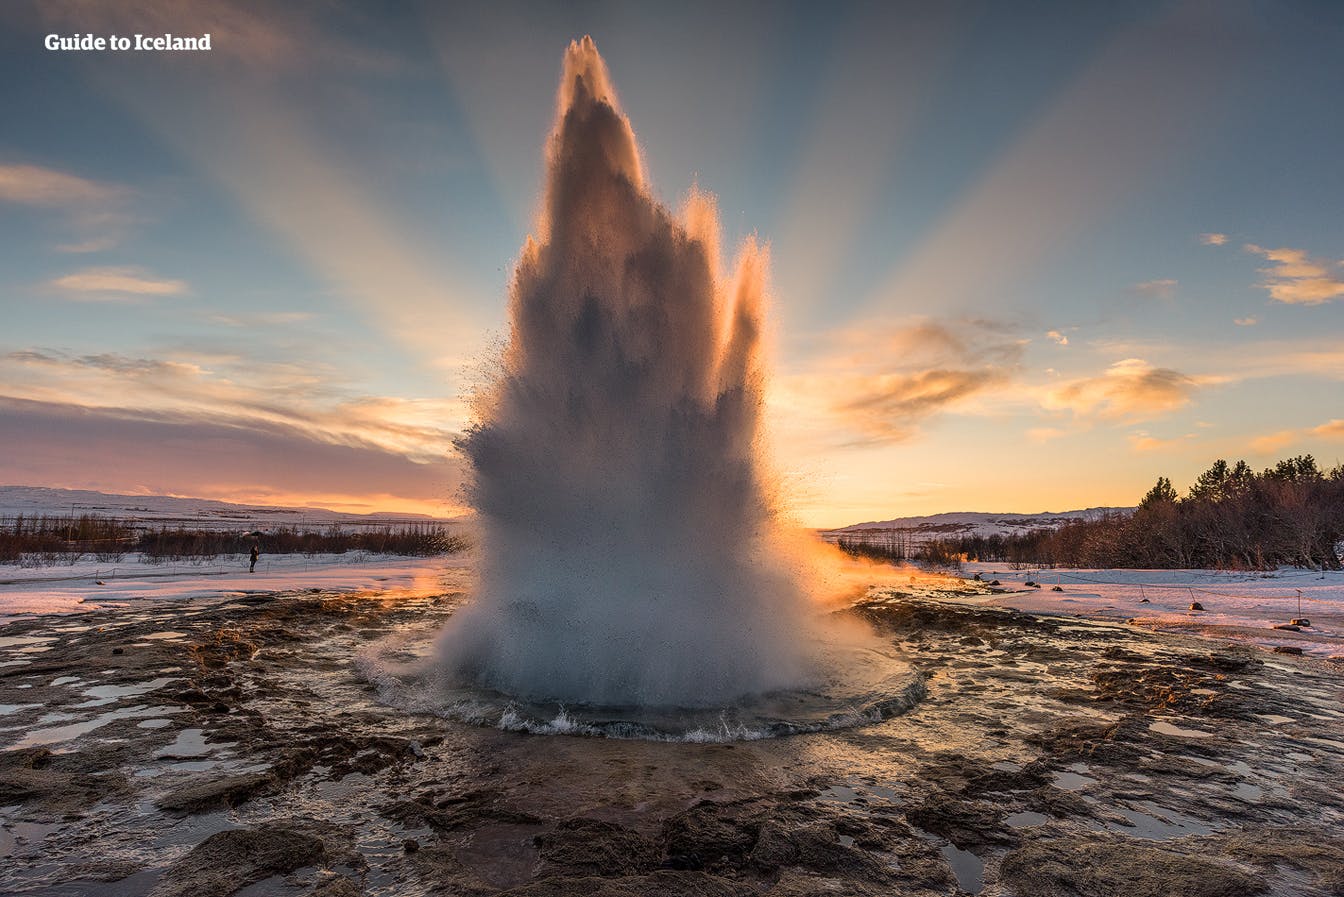 Le geyser le plus actif de la zone géothermique de Geyser en Islande est nommé Strokkur.